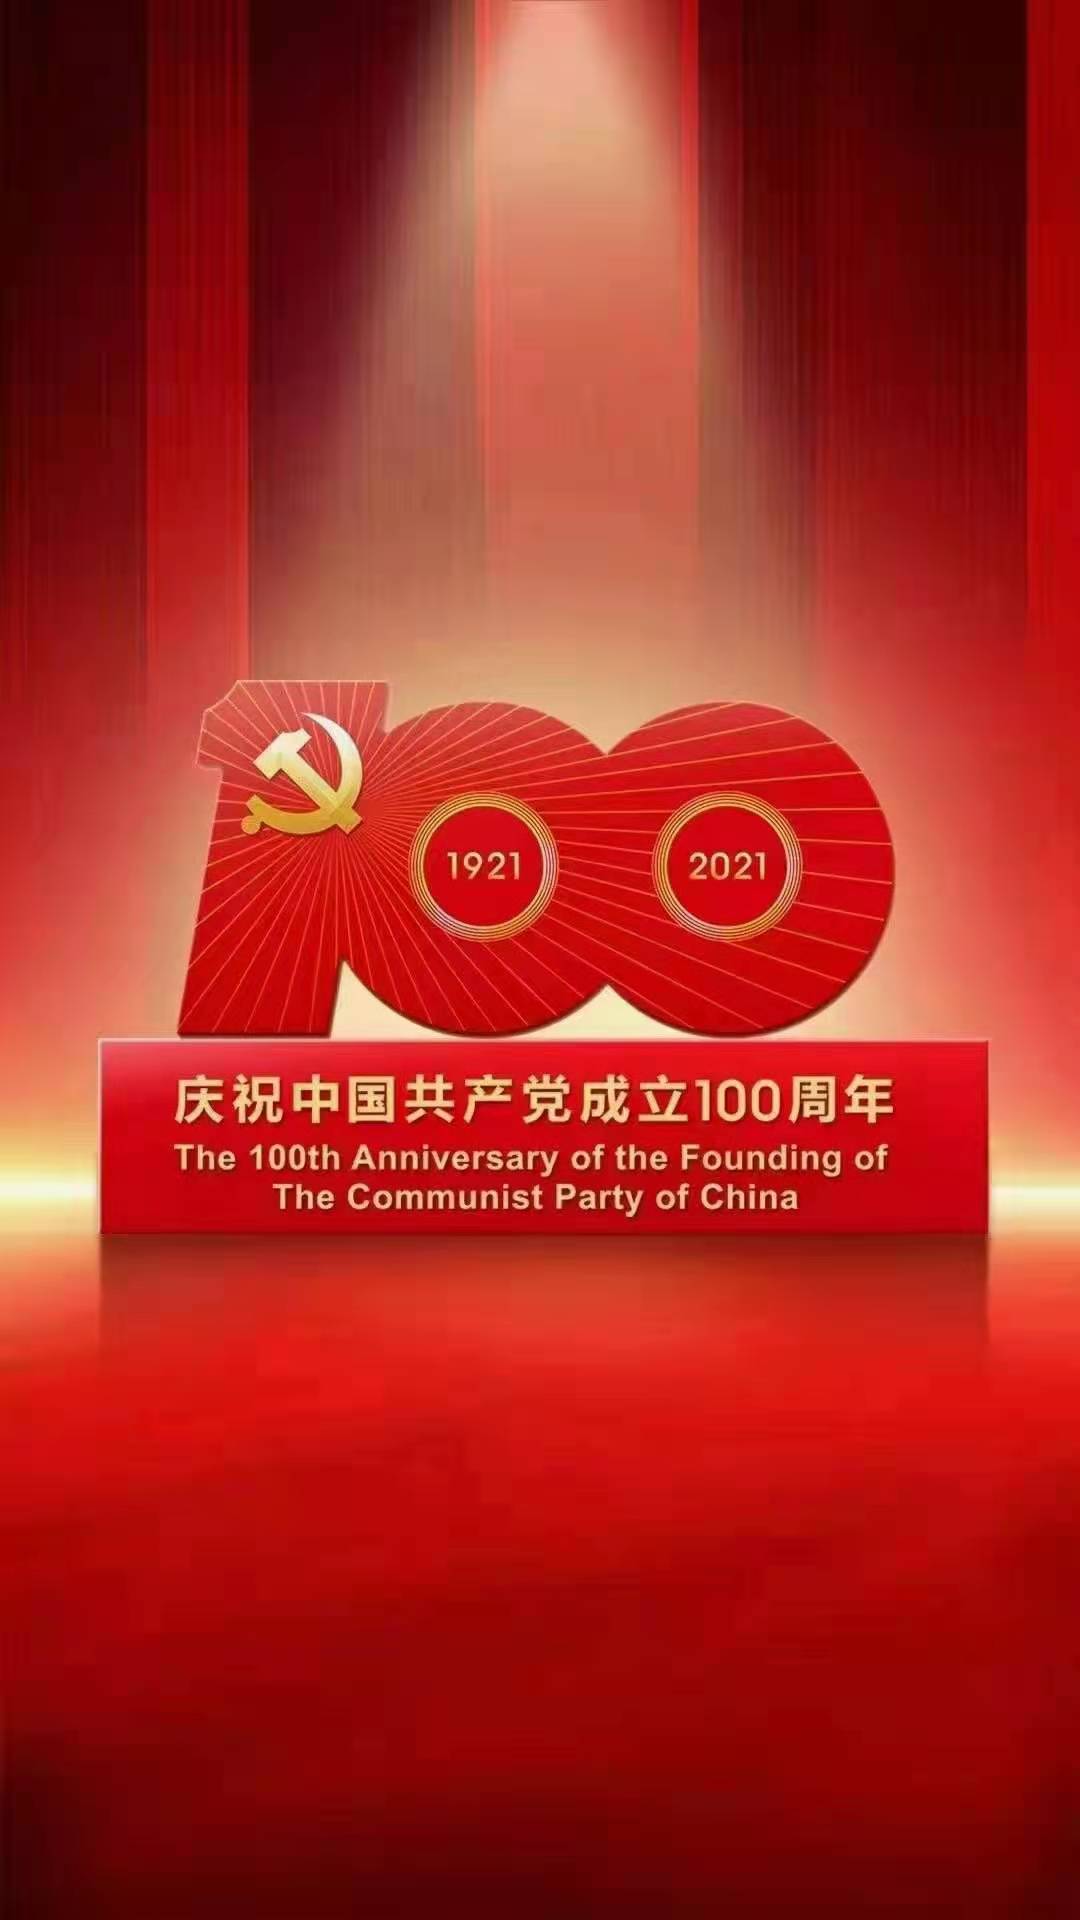 Obilježavanje 100 godina CPC-a